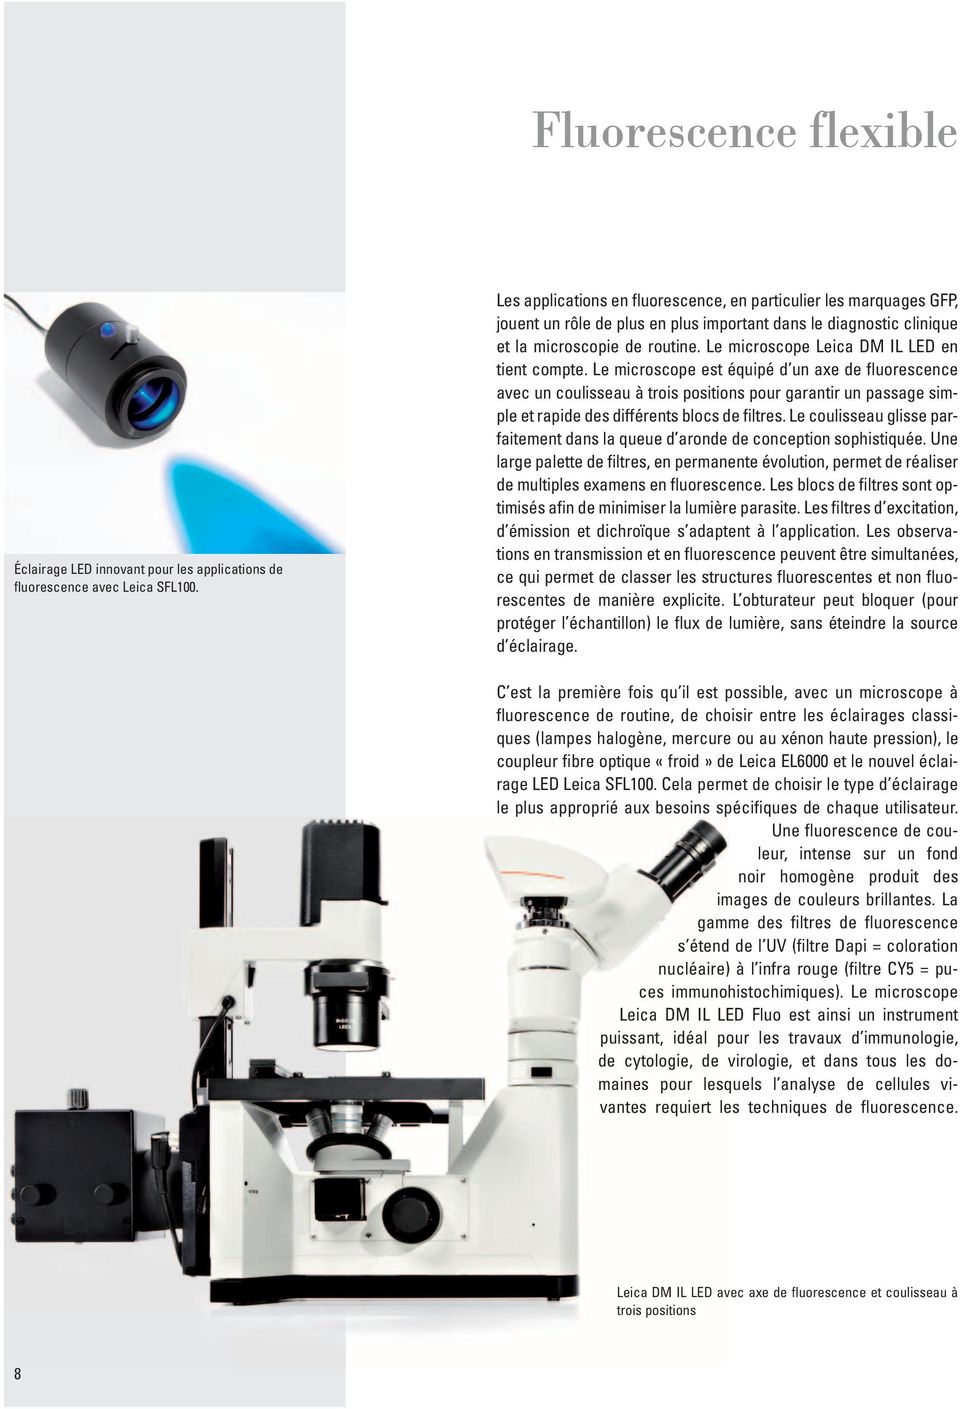 Le microscope Leica DM IL LED en tient compte.